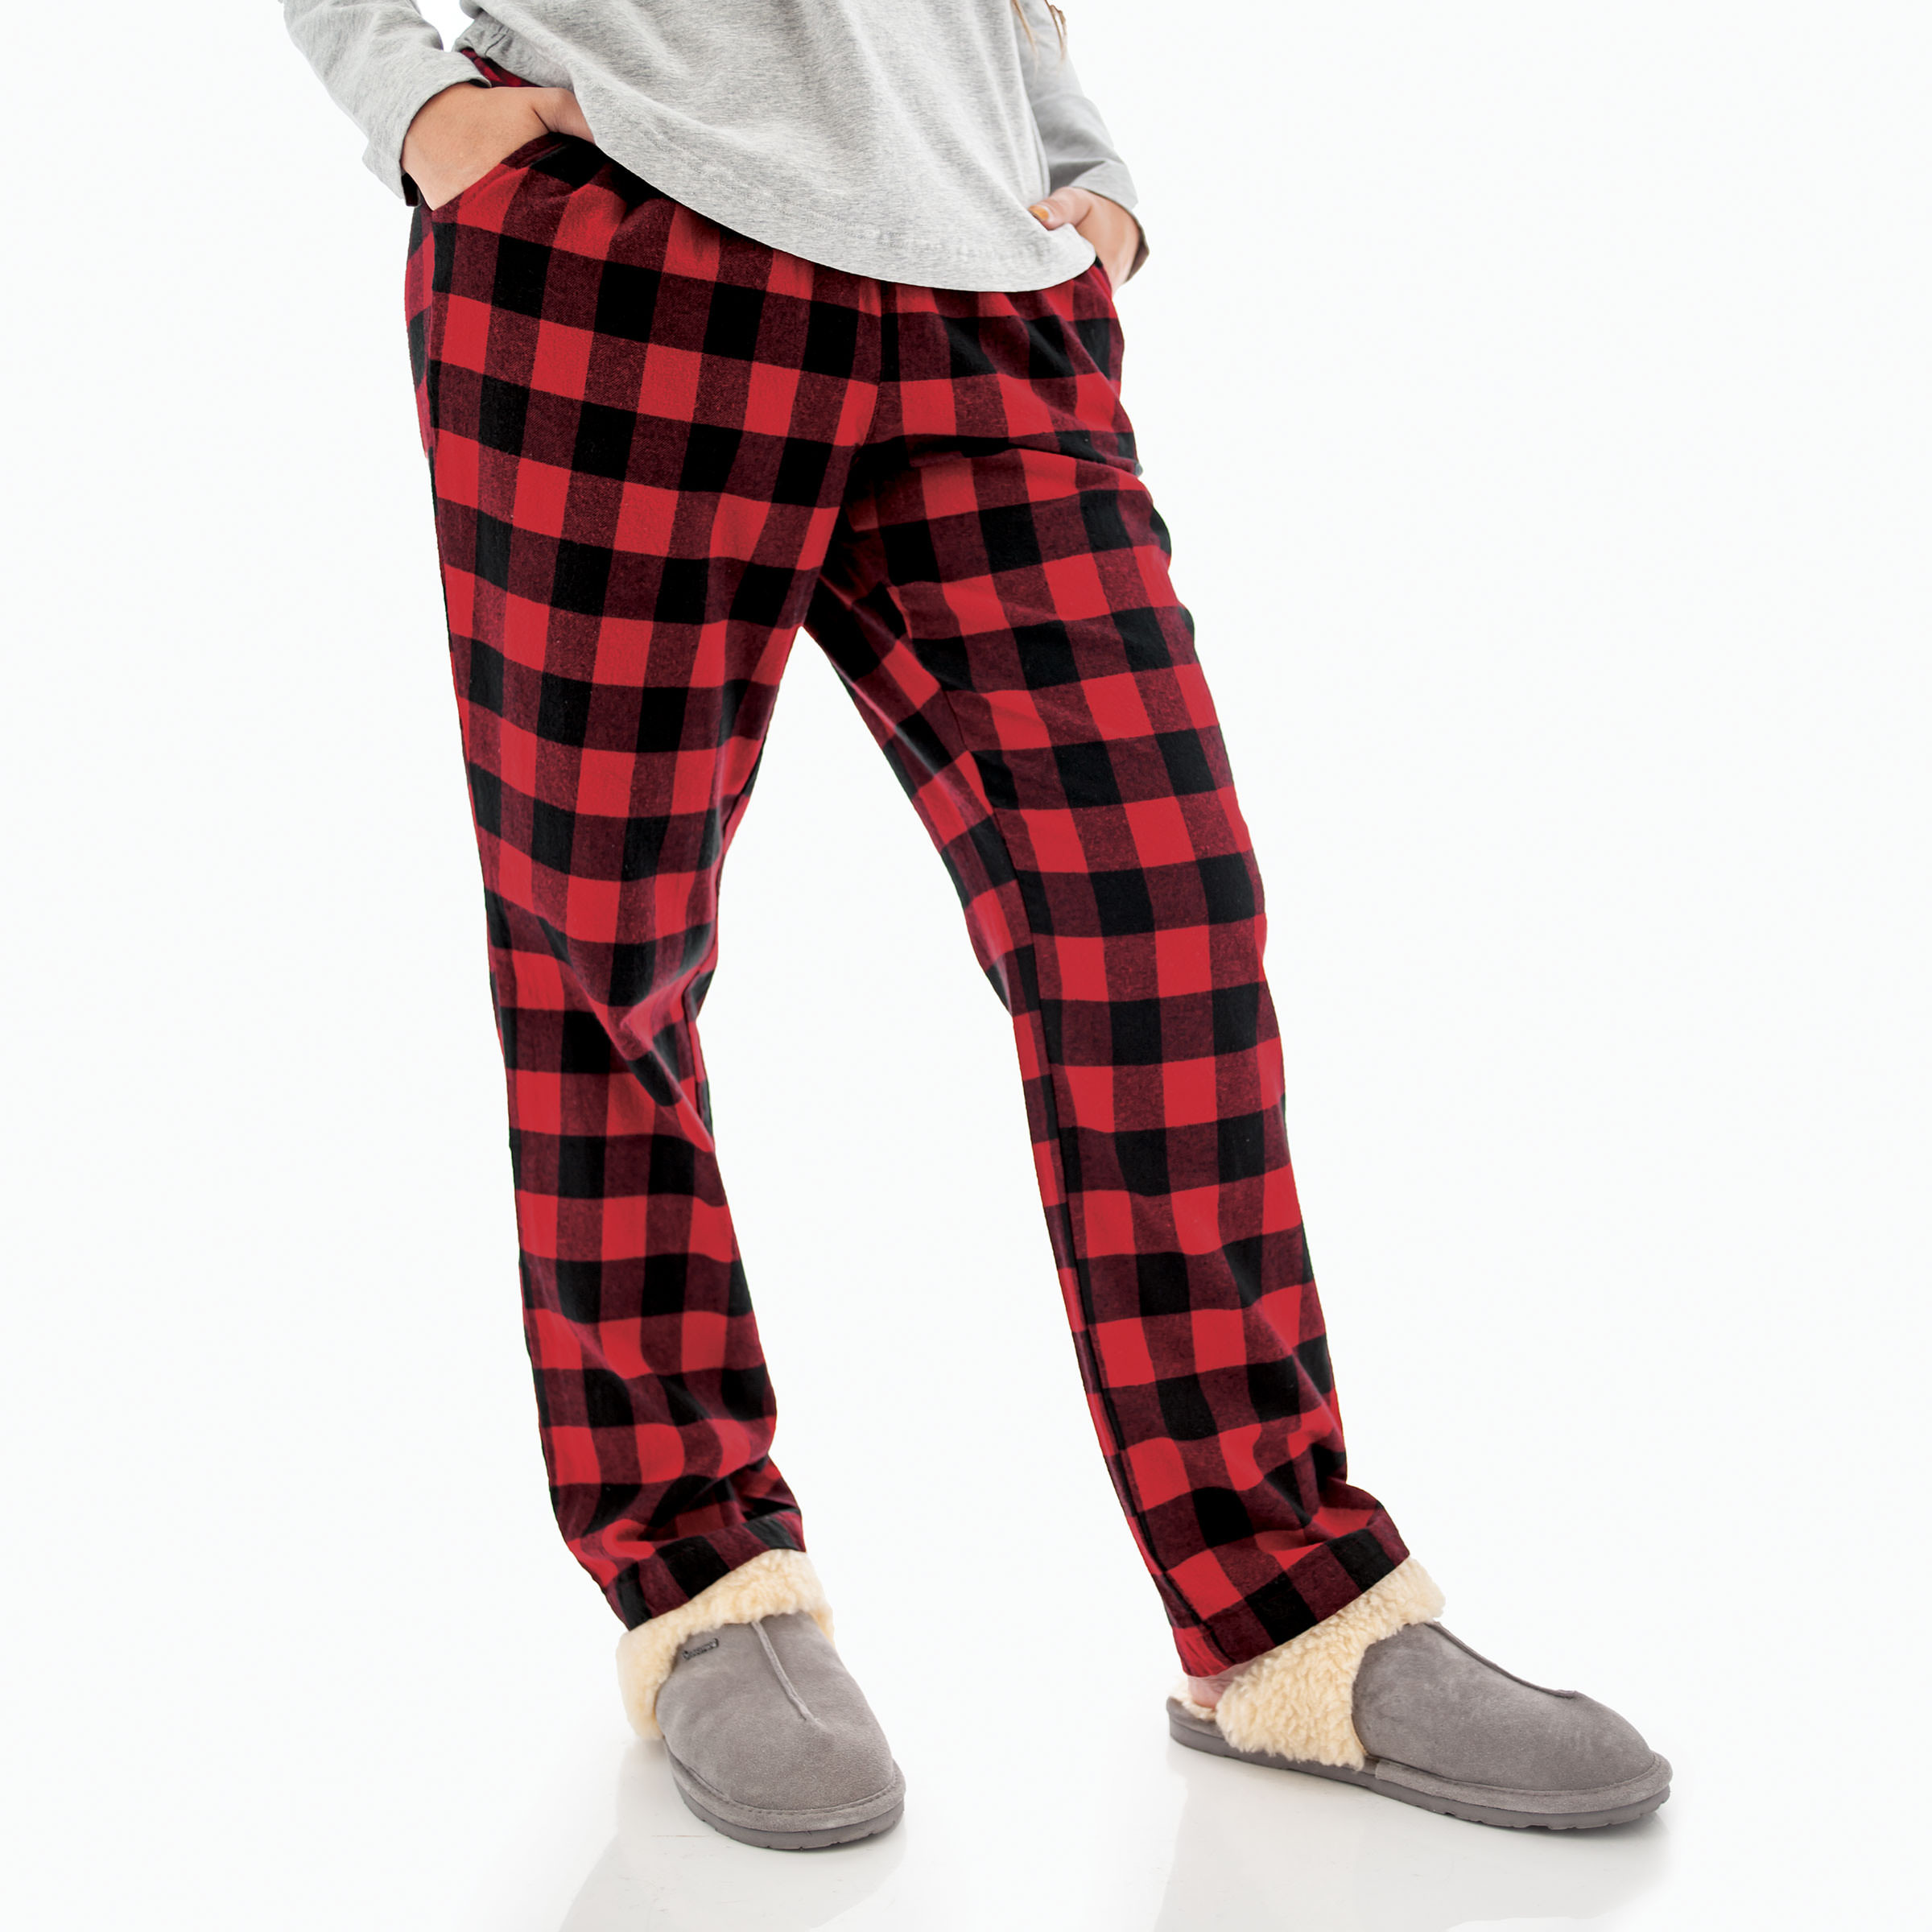 Women's Plaid Pajama Pant